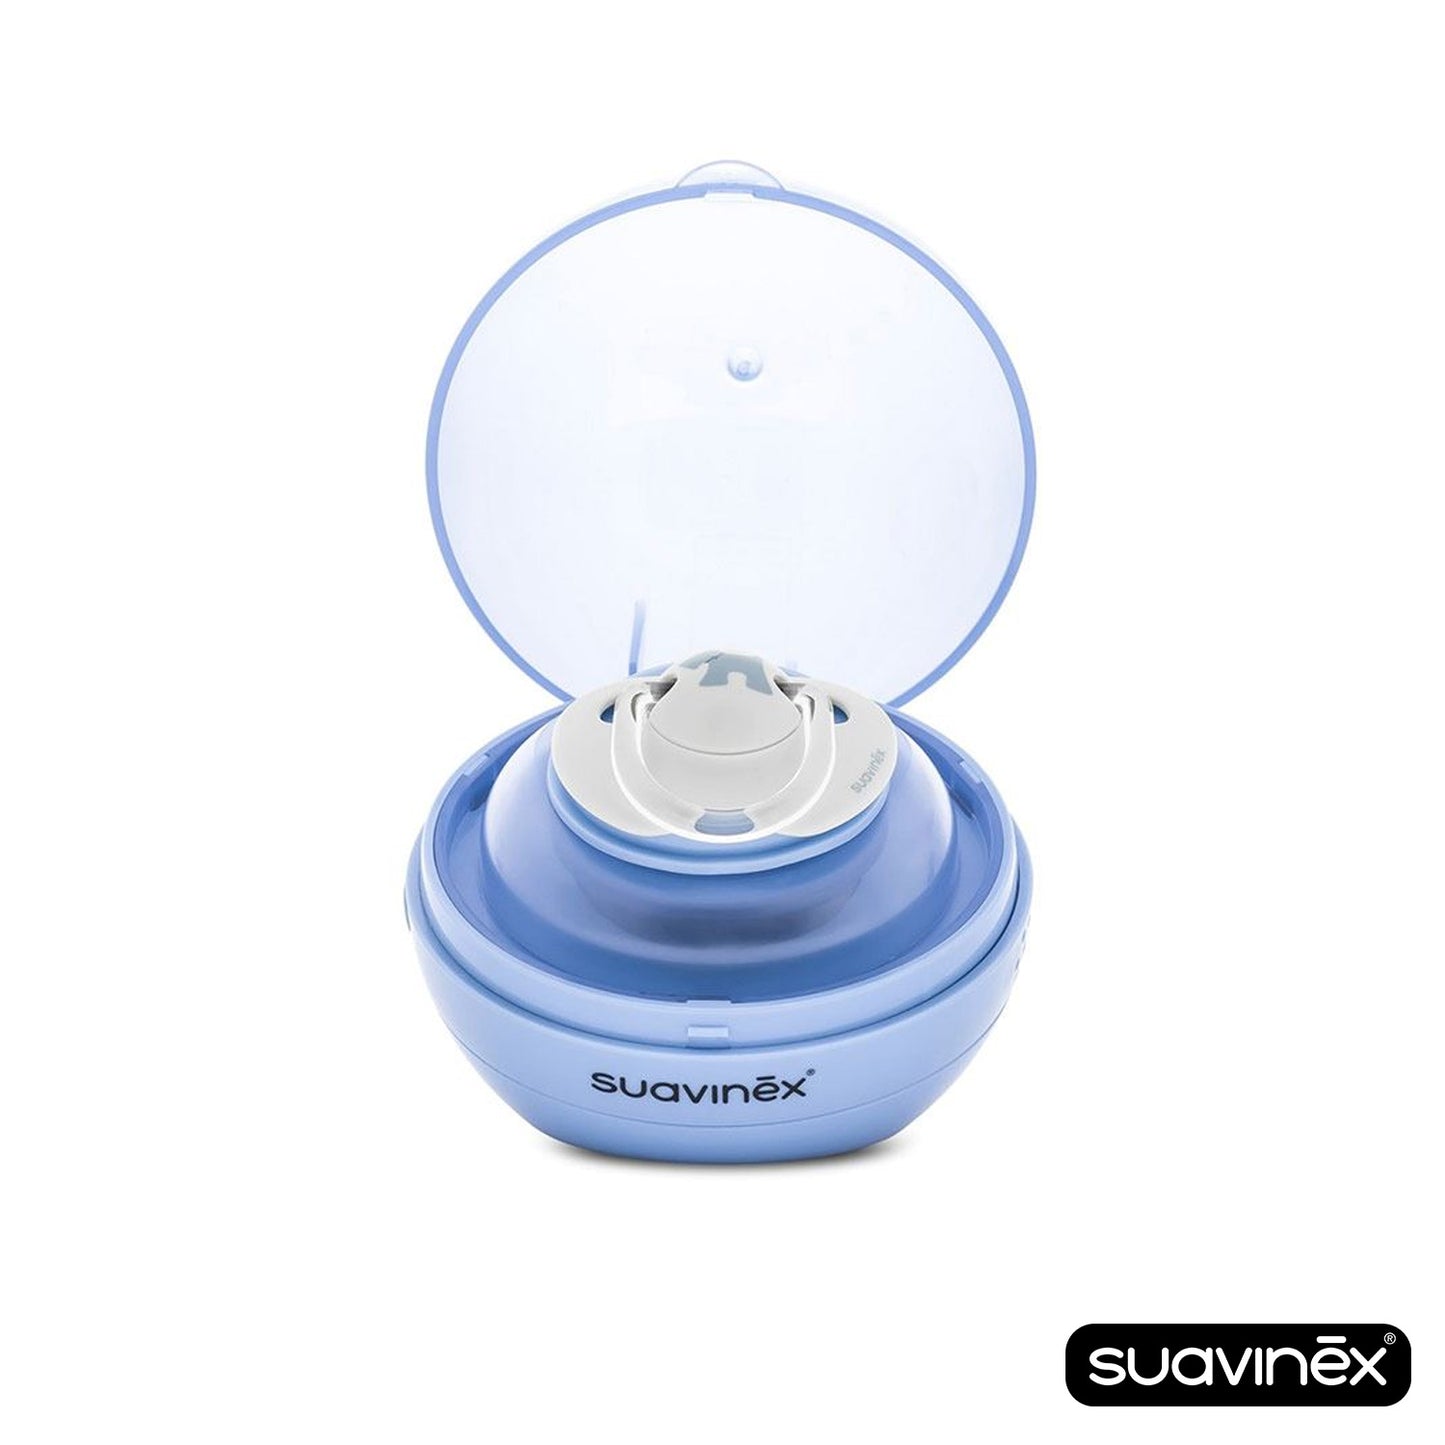 Suavinex - Duccio Portable Pacifier Sterilizer